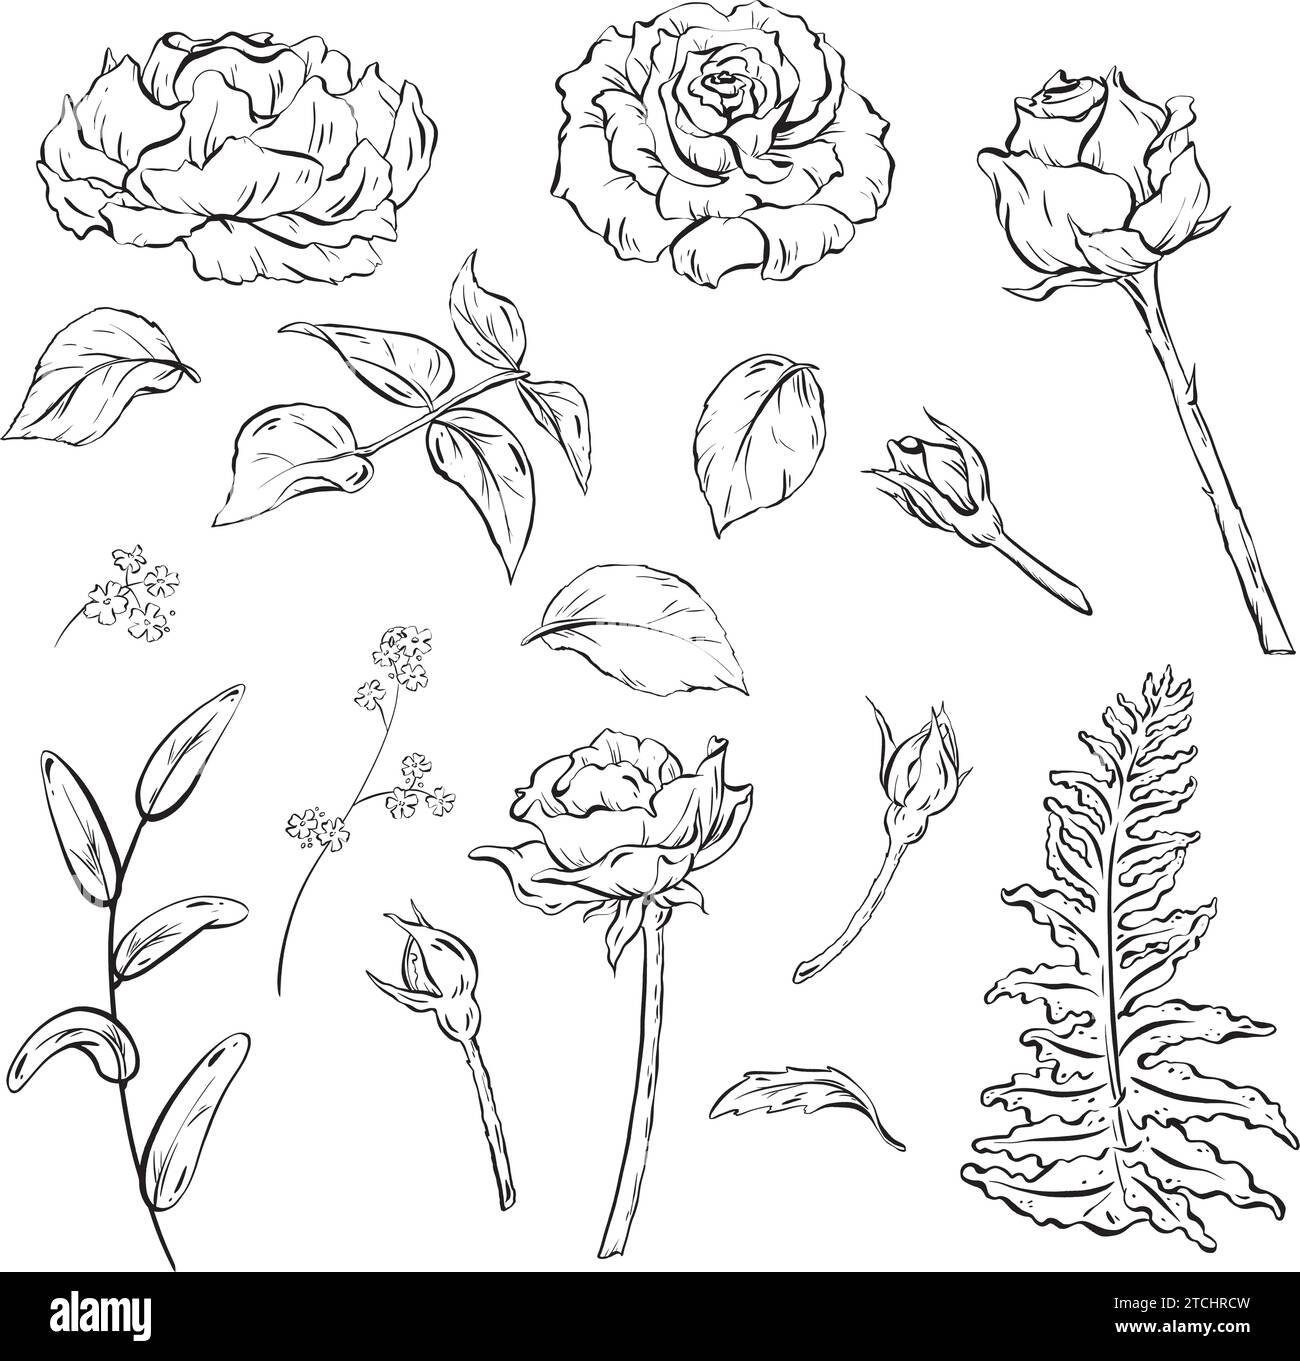 Inchiostro: Un set di fiori disegnati a mano con rose con gemme e foglie delicate. Foglie di felce forestali per allestimenti bouquet. Fiori selvatici e boschi Illustrazione Vettoriale